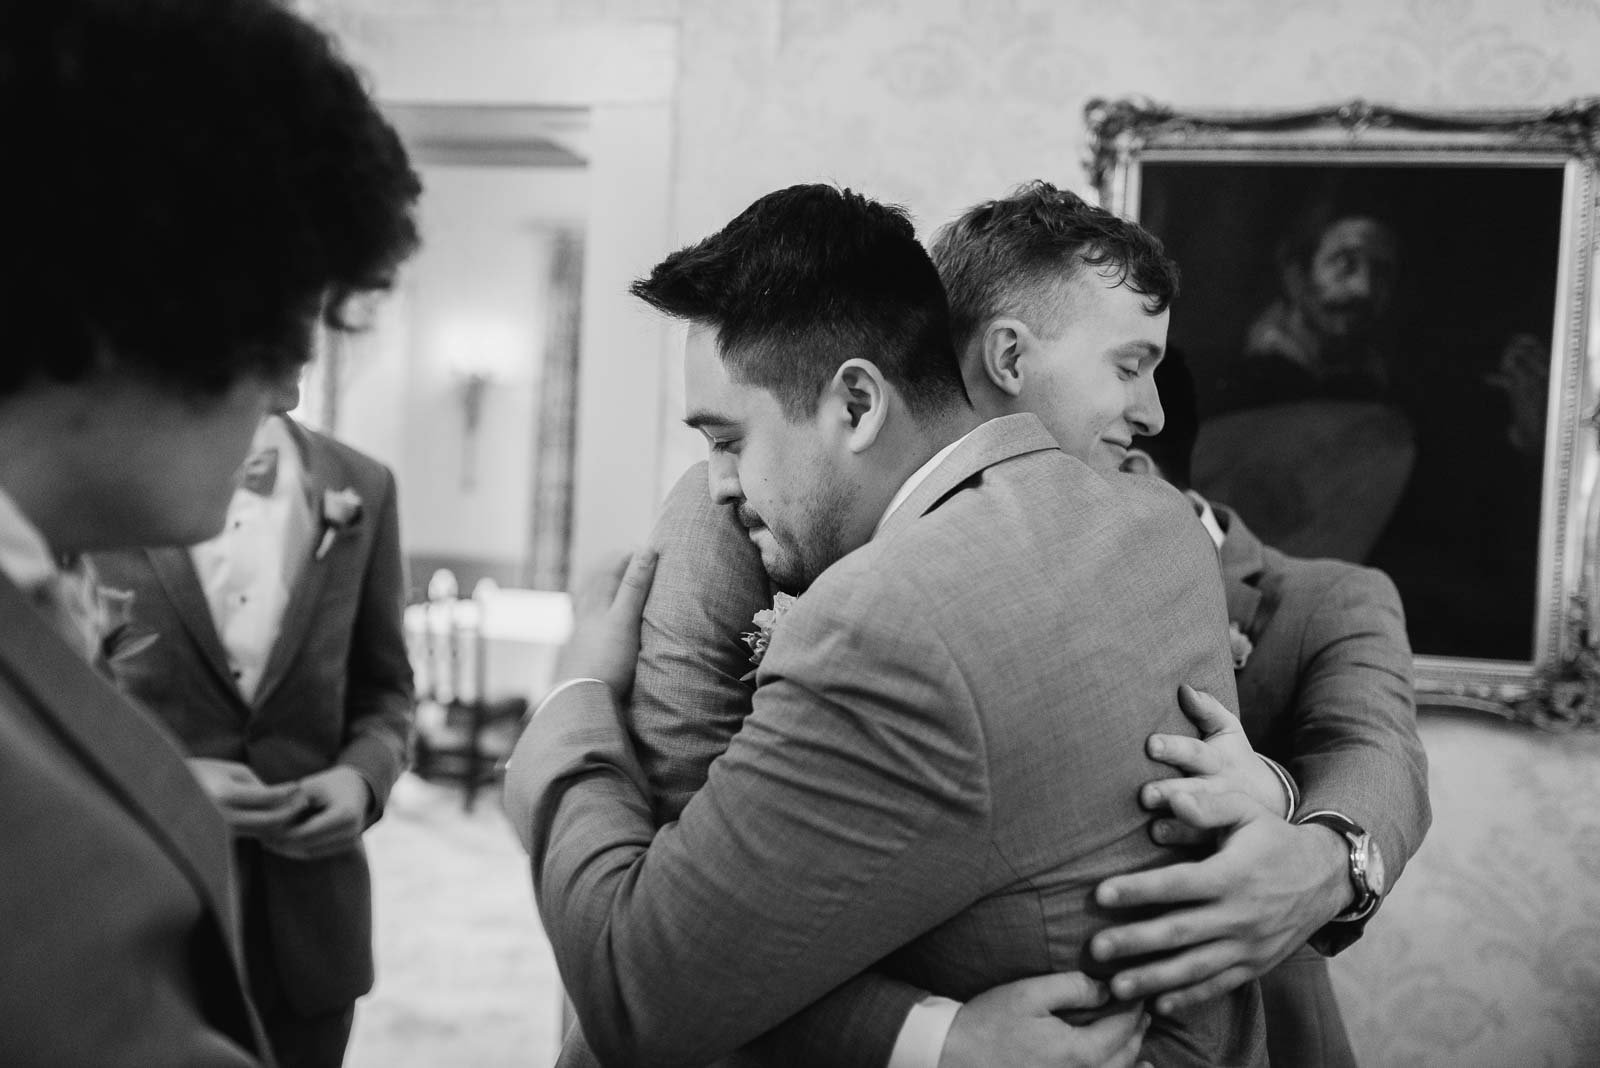 Hugs all around as a groom hugs one of the groomsmen